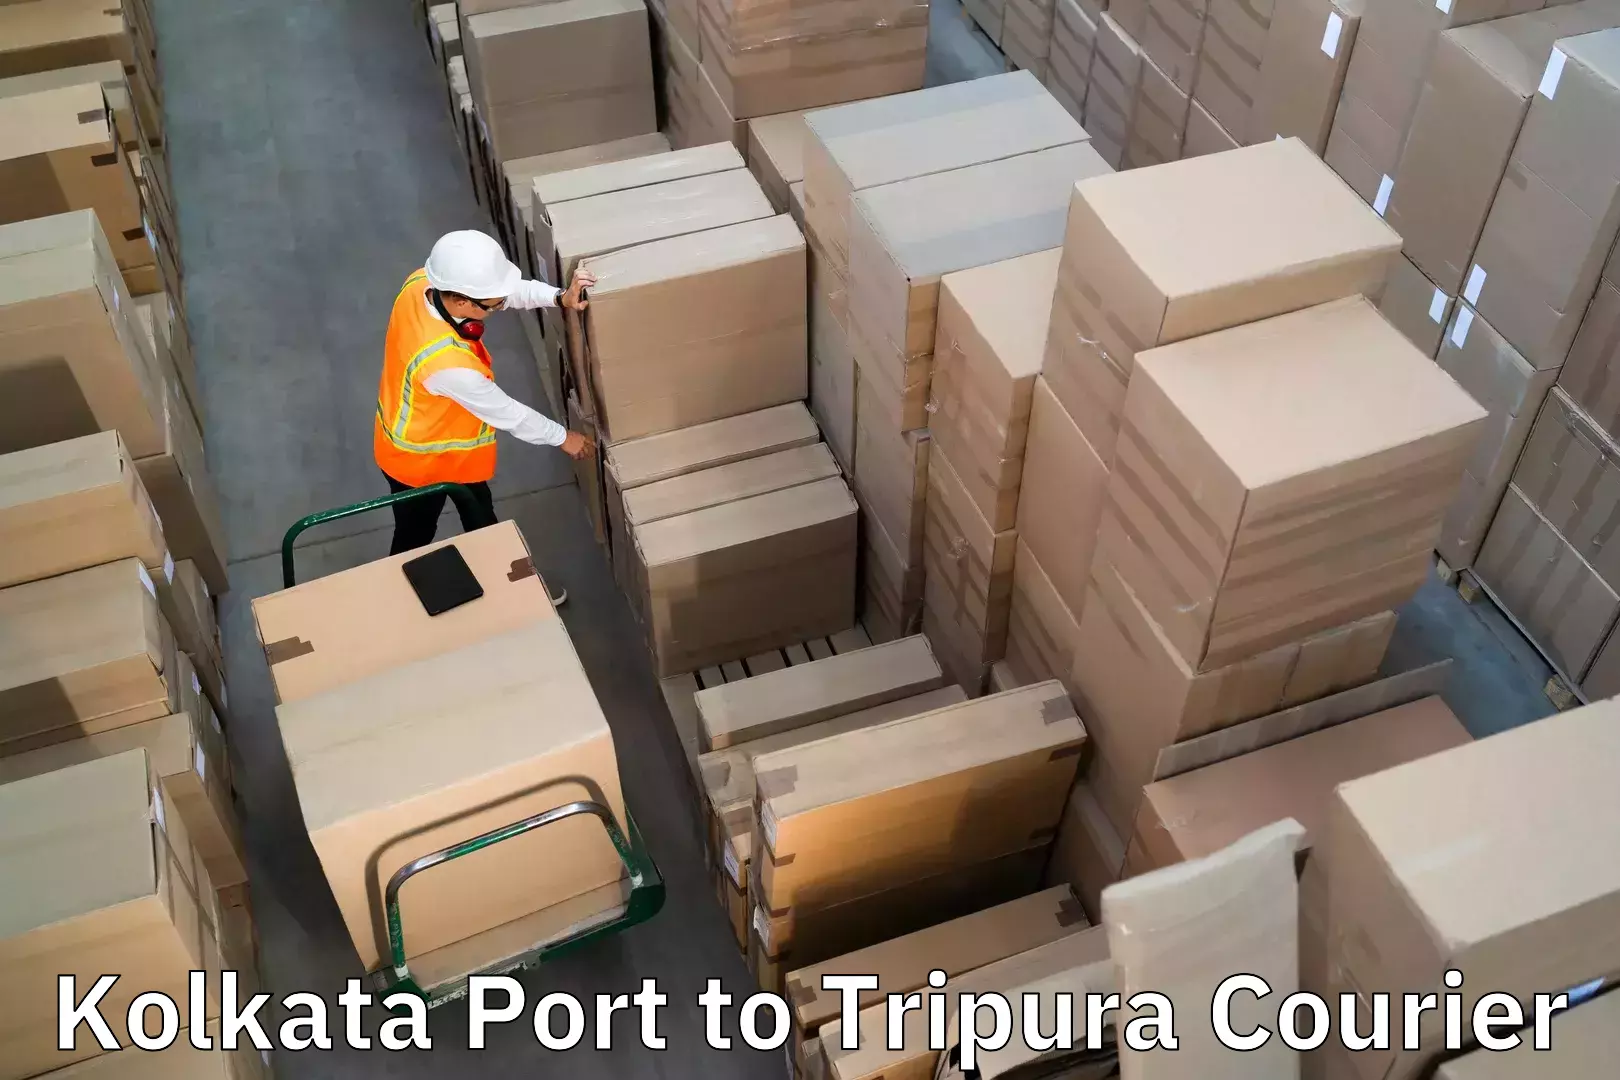 Luggage shipping service in Kolkata Port to Sonamura